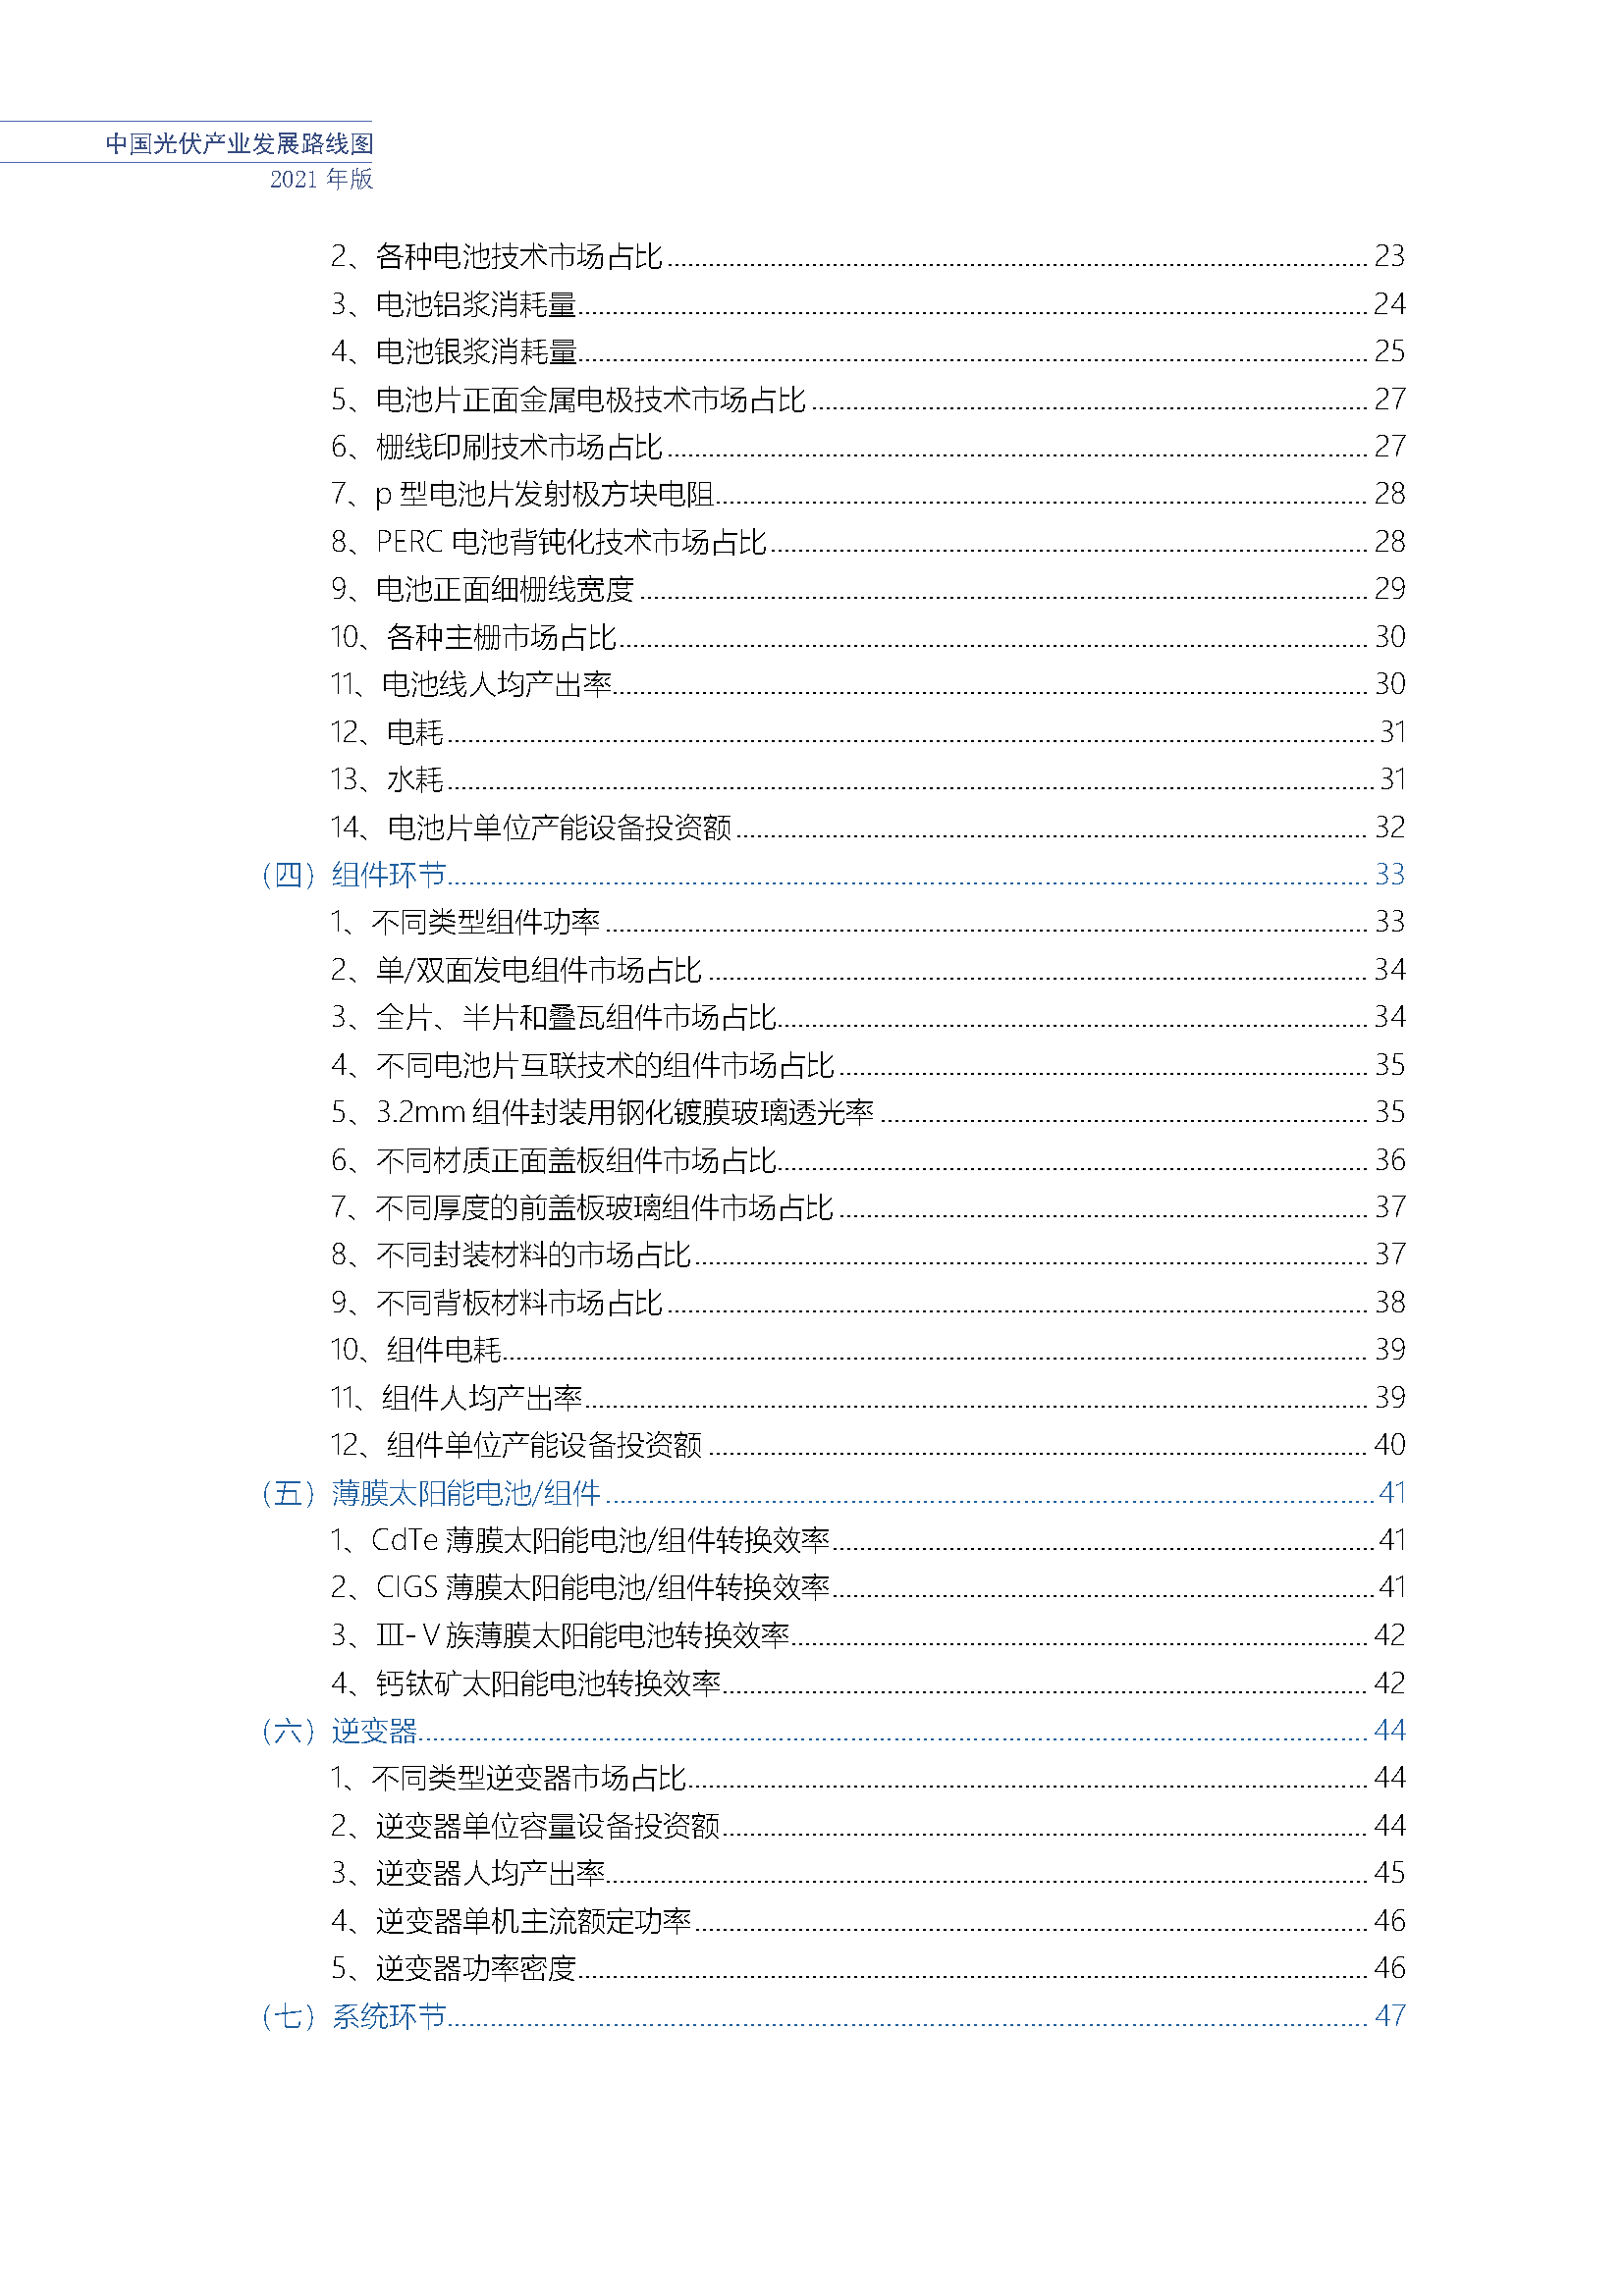 中国光伏产业发展路线图(2021年版)_页面_09.png